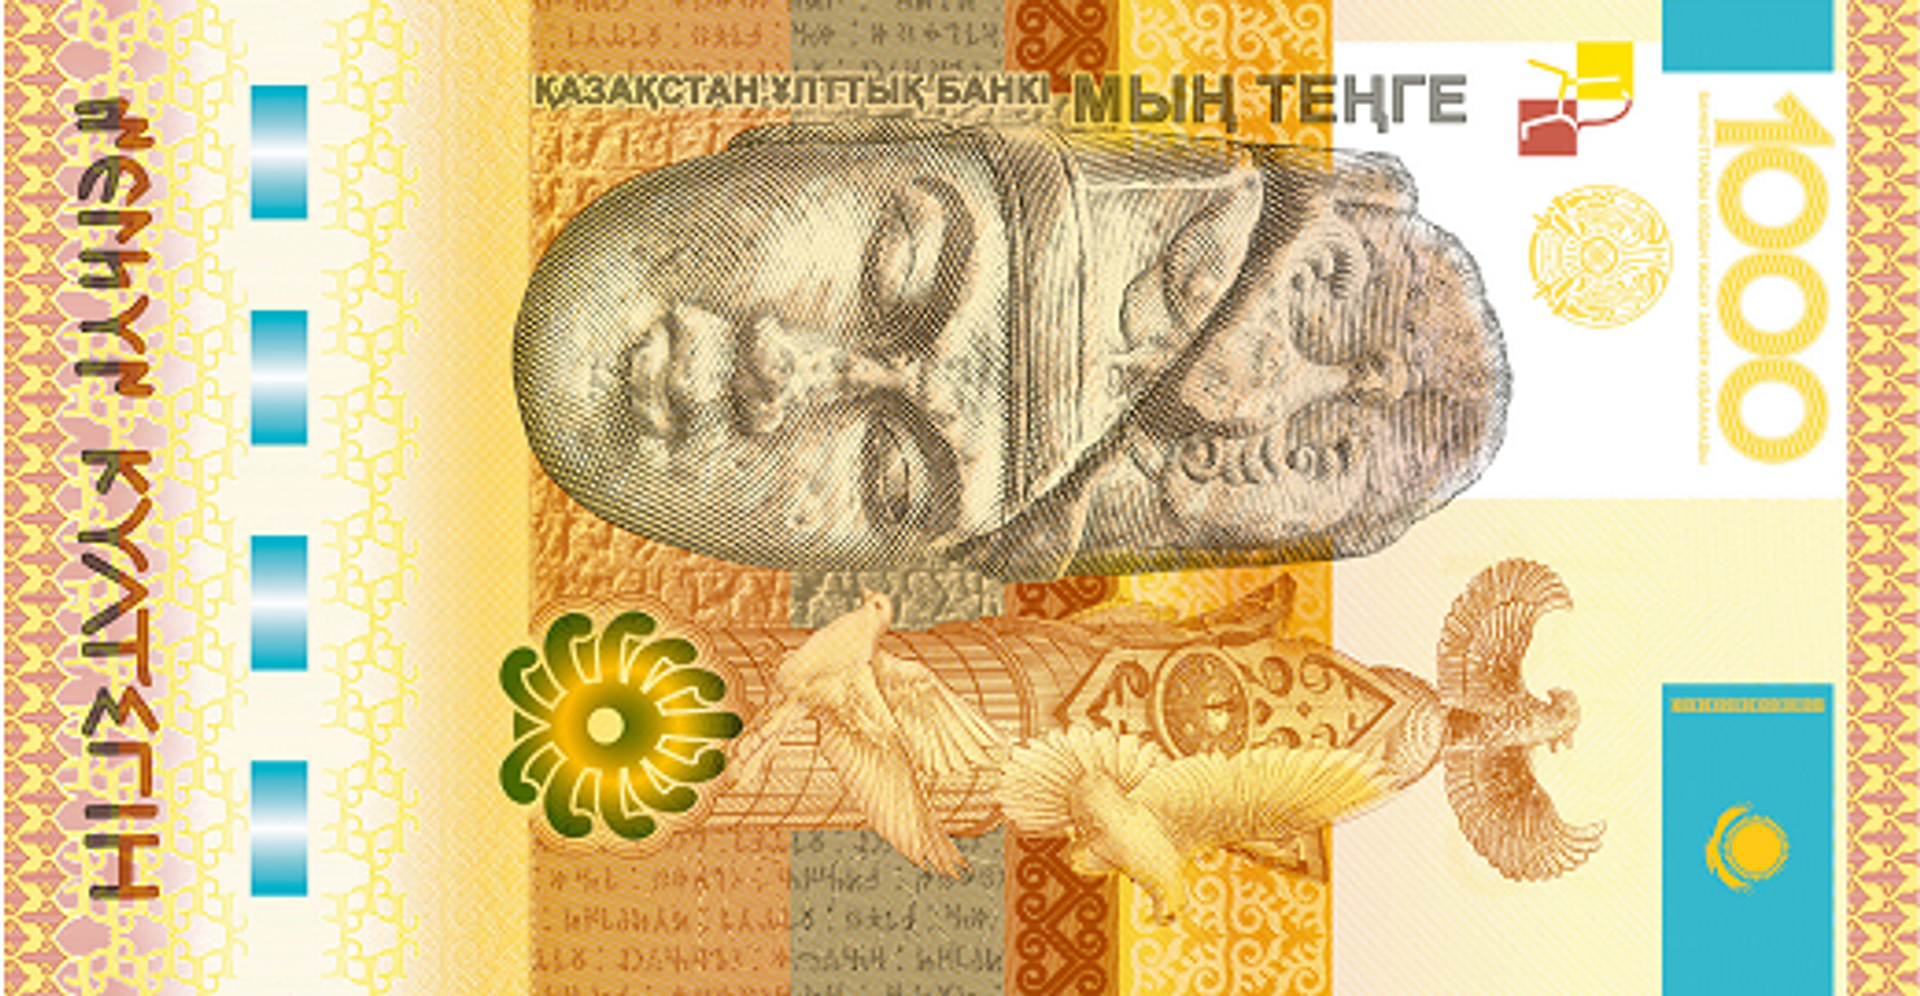 Памятные банкноты являются законным платежным средством - Нацбанк - Sputnik Казахстан, 1920, 13.07.2021